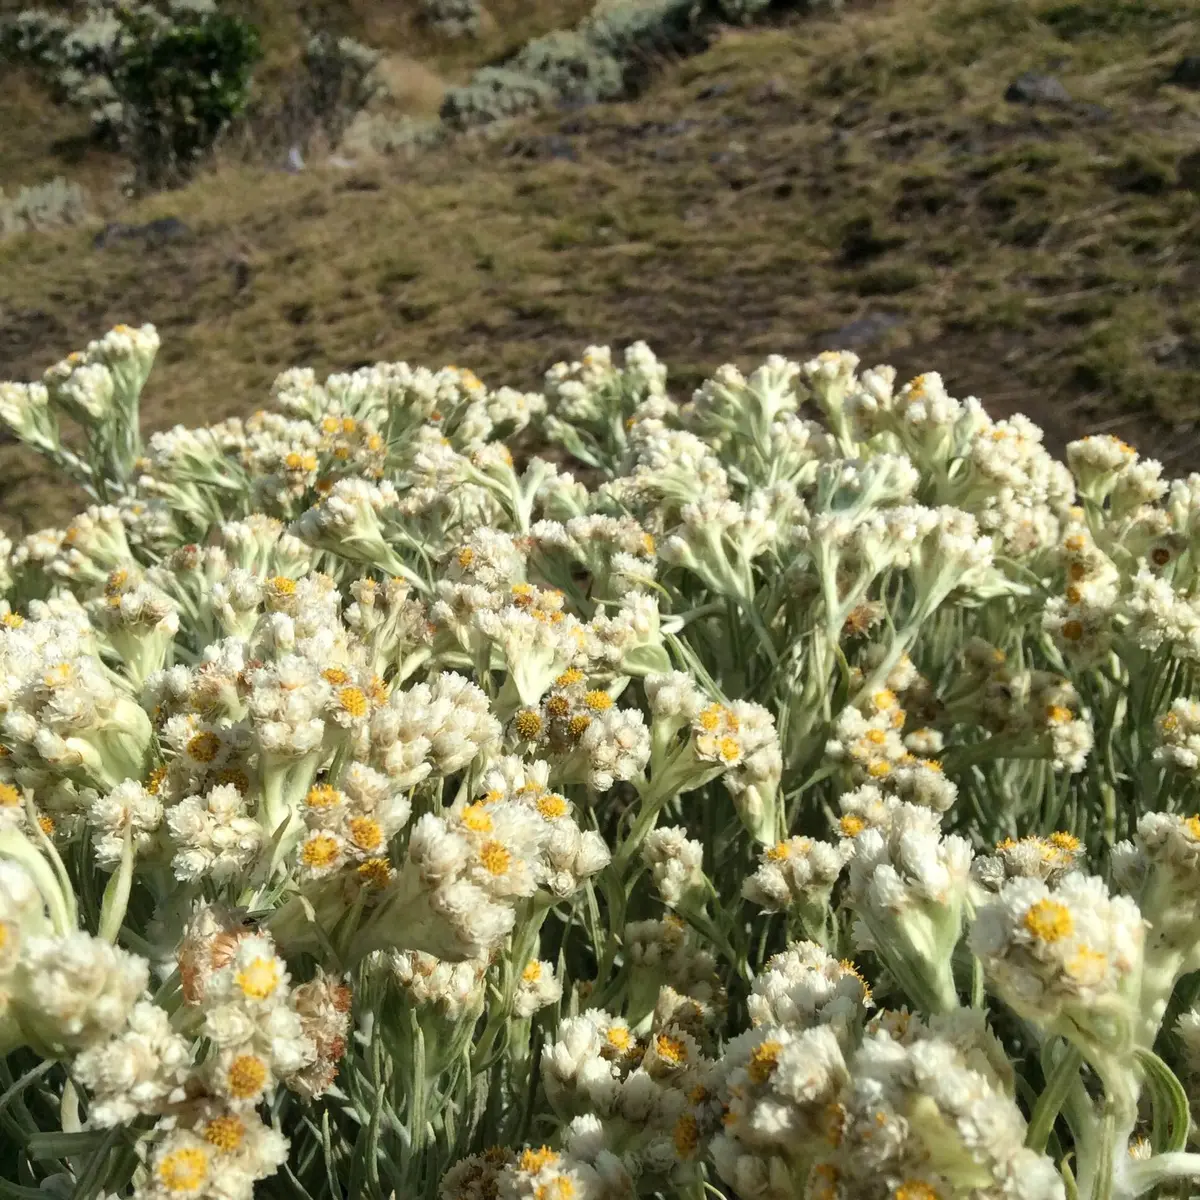 serba serbi bunga edelweis, tanaman abadi dan langka yang dilarang